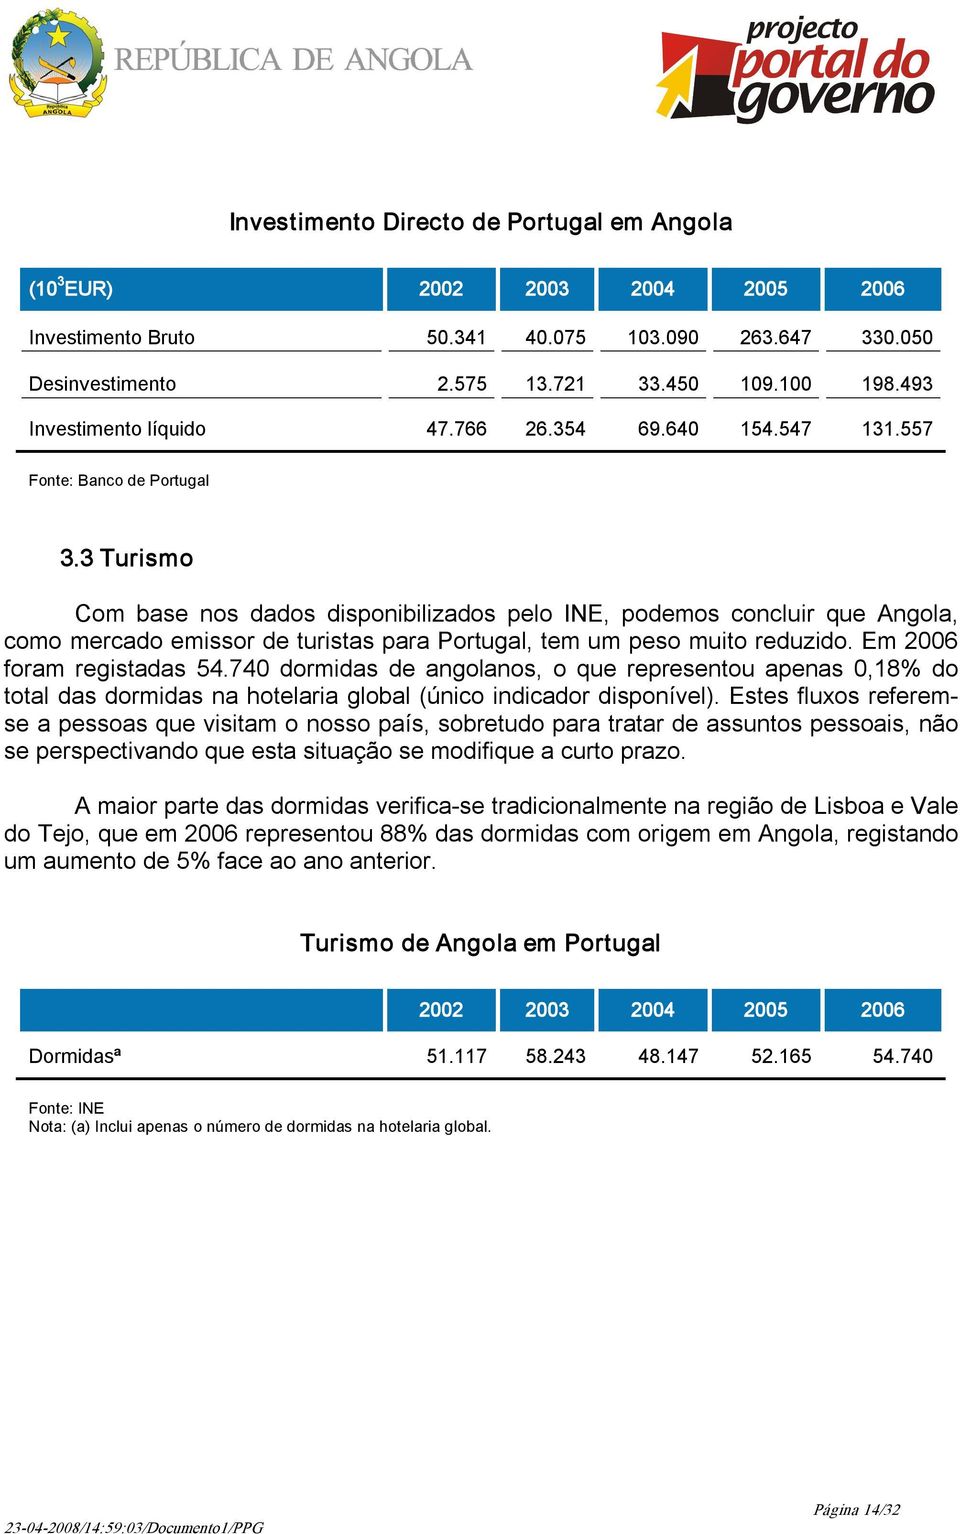 3 Turismo Com base nos dados disponibilizados pelo INE, podemos concluir que Angola, como mercado emissor de turistas para Portugal, tem um peso muito reduzido. Em 2006 foram registadas 54.